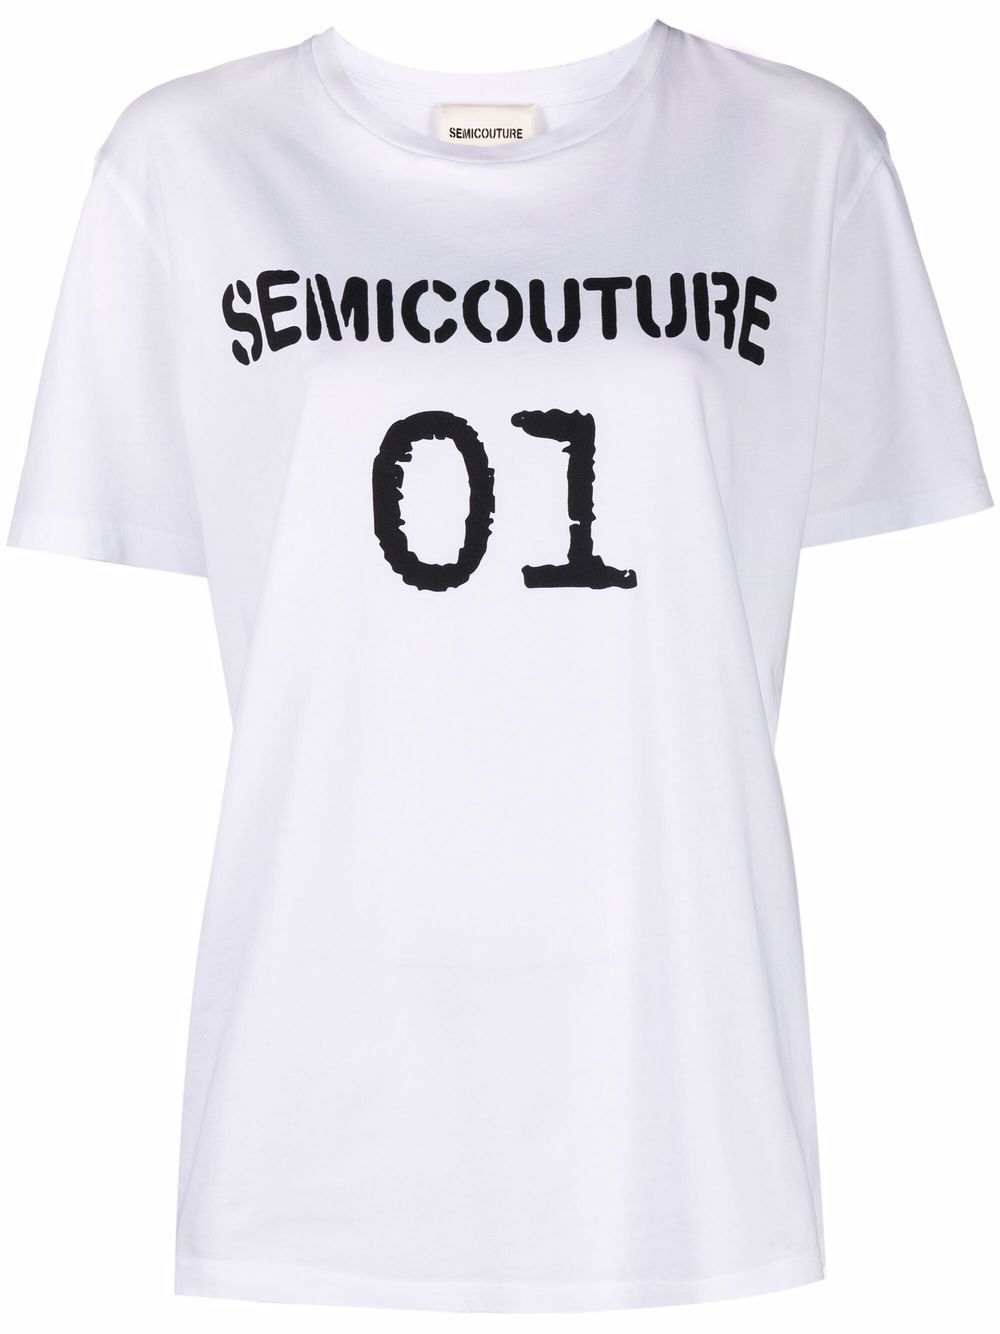 фото Semicouture футболка с логотипом